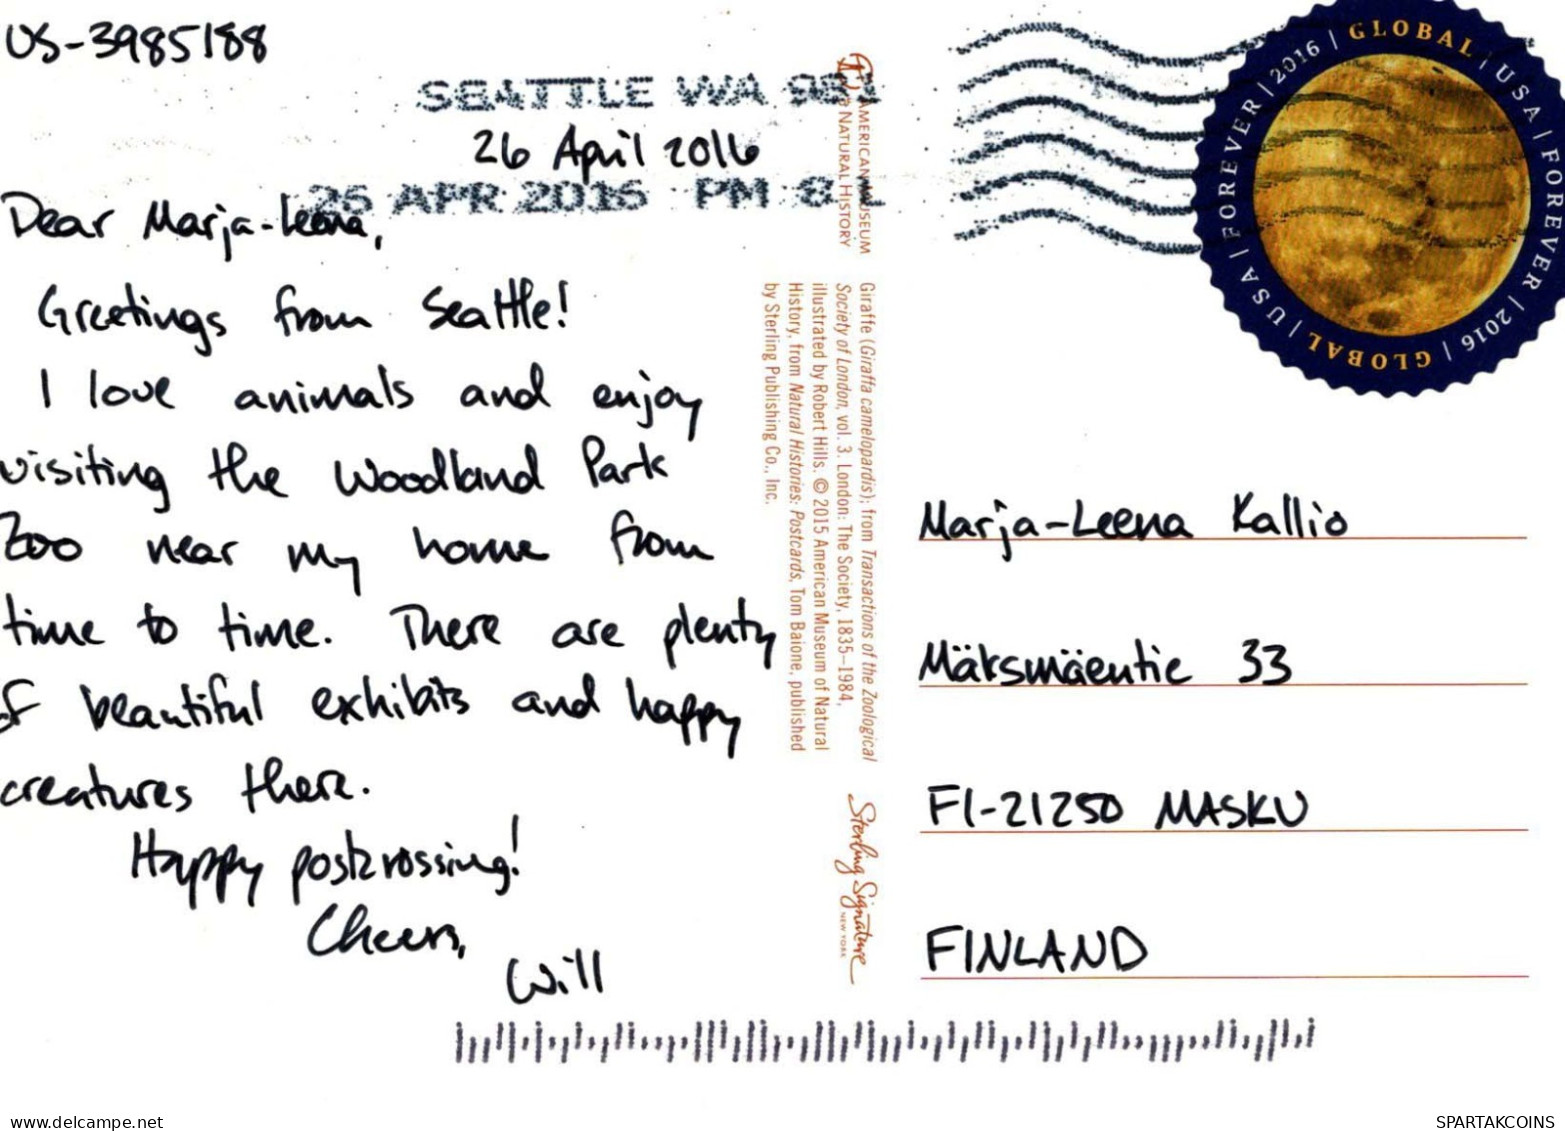 JIRAFA Animales Vintage Tarjeta Postal CPSM #PBS946.A - Giraffes